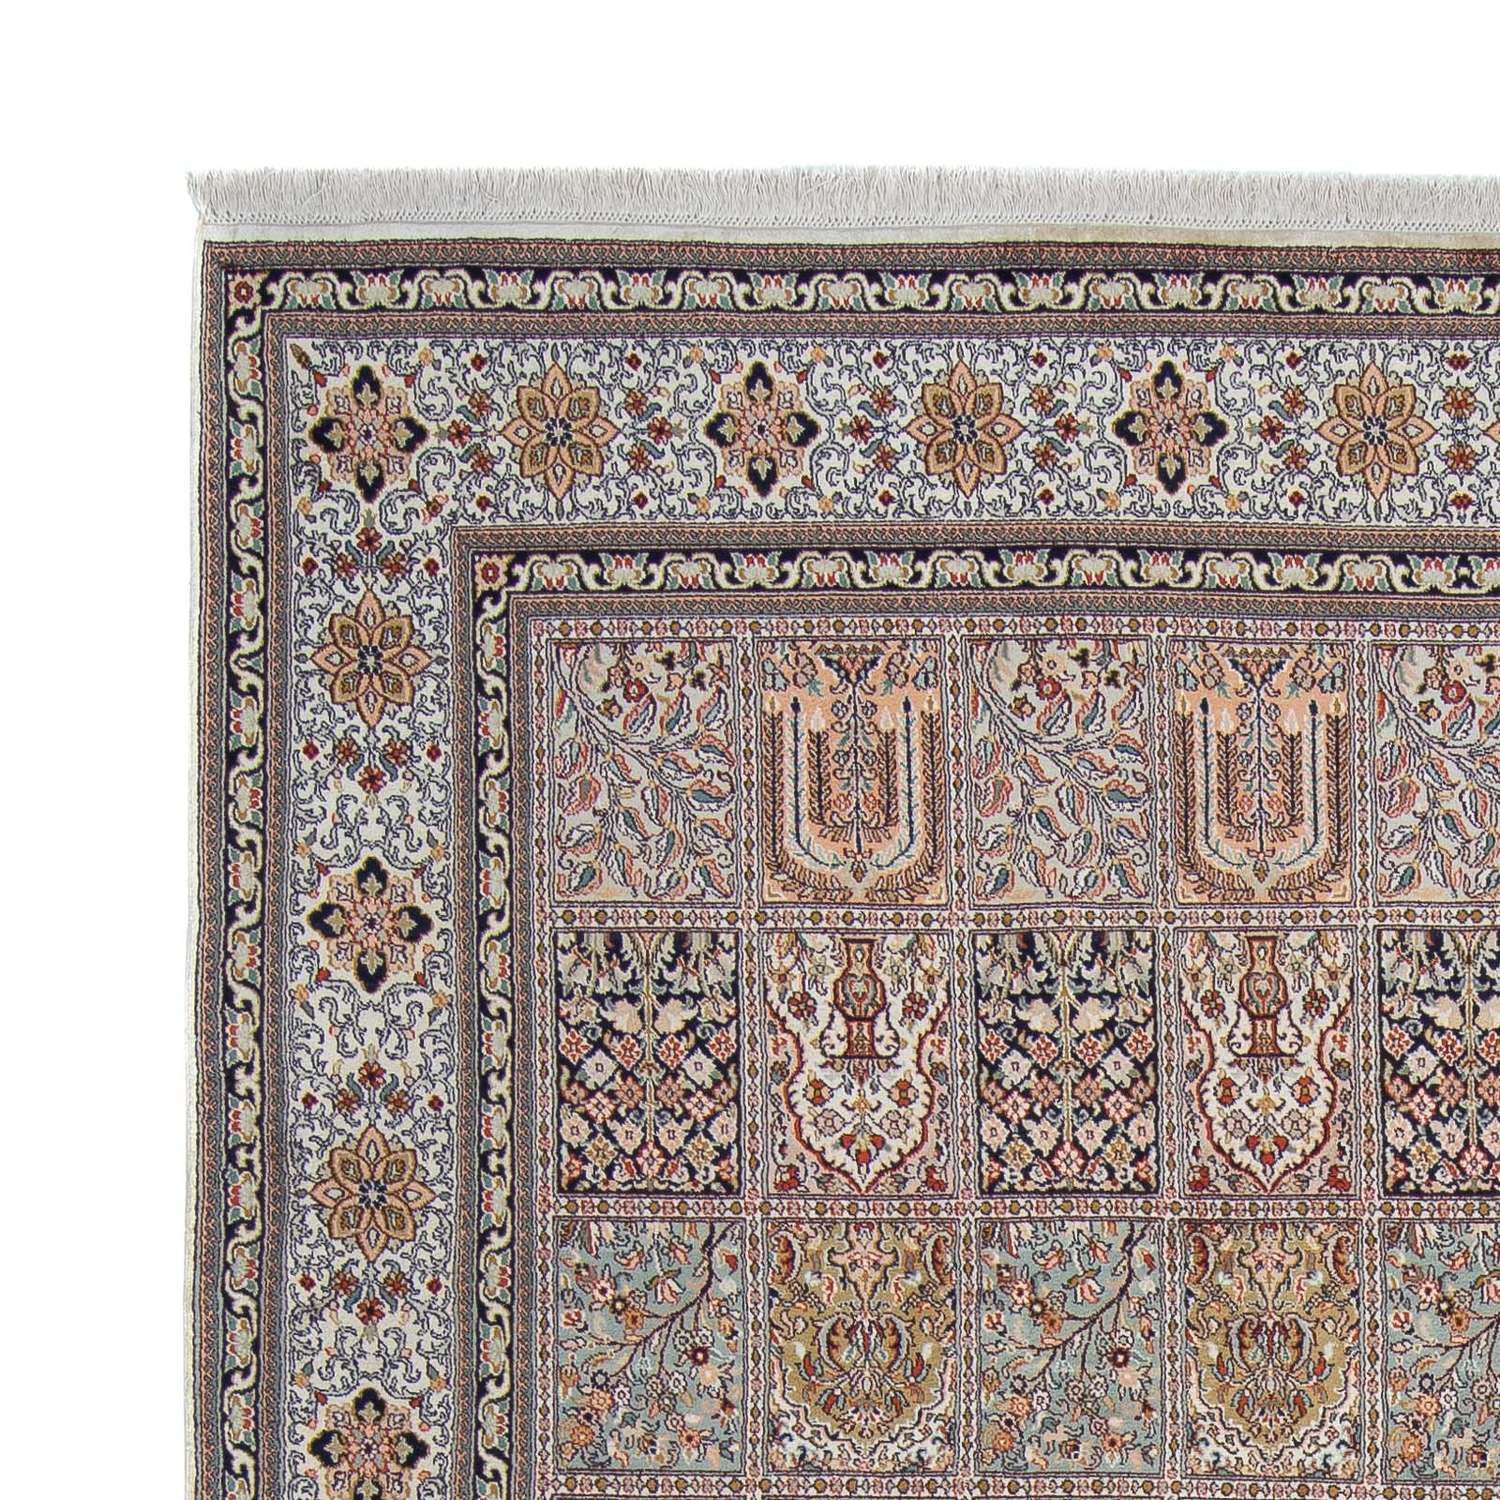 Tapis persan - Classique - 310 x 213 cm - multicolore